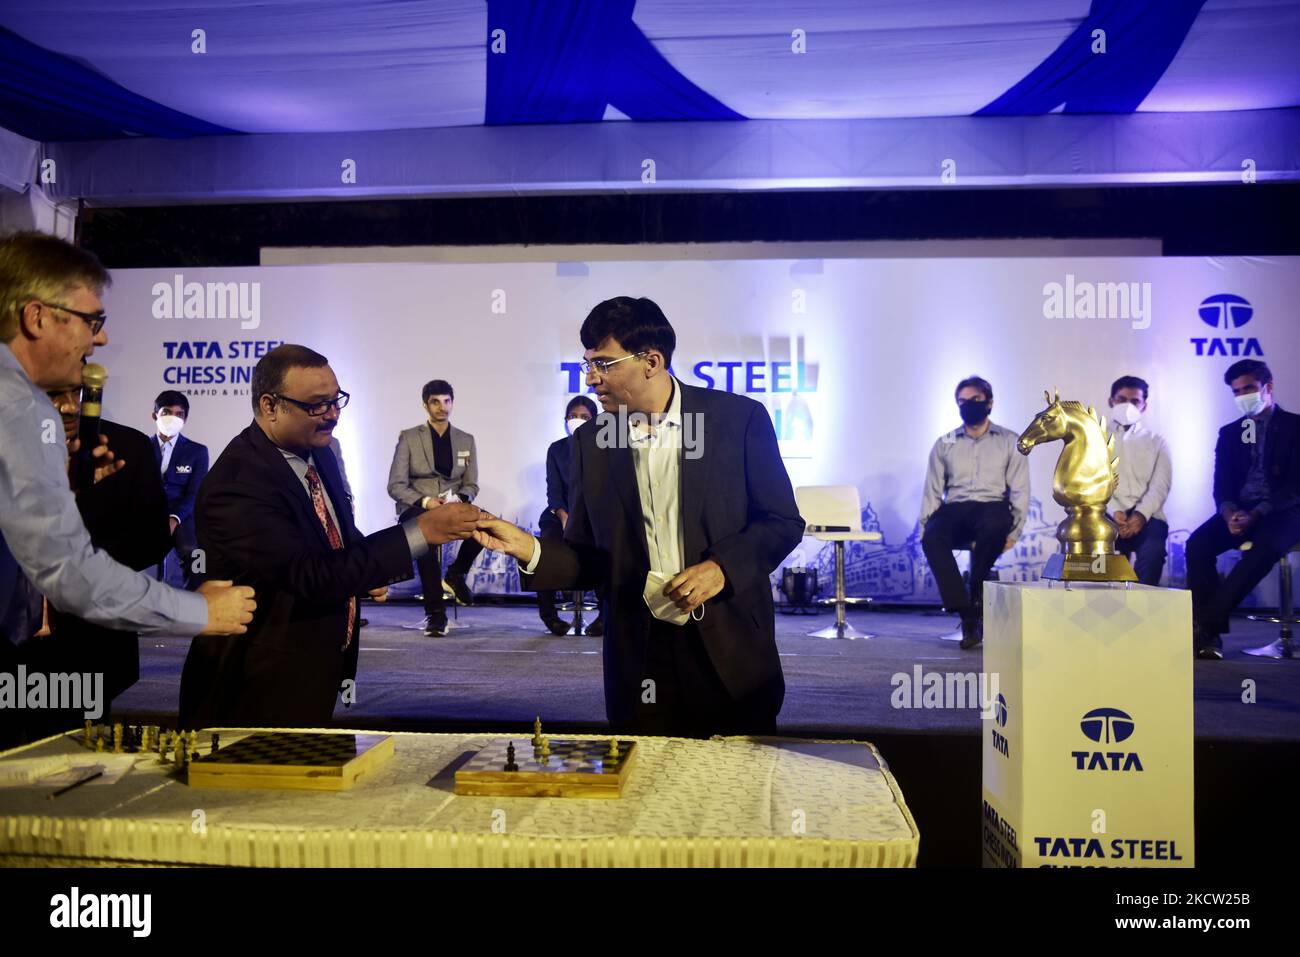 Tata Steel Chess Masters 2023 Trivia  Gukesh, Arjun, Pragg take on Carlsen  & Co. 